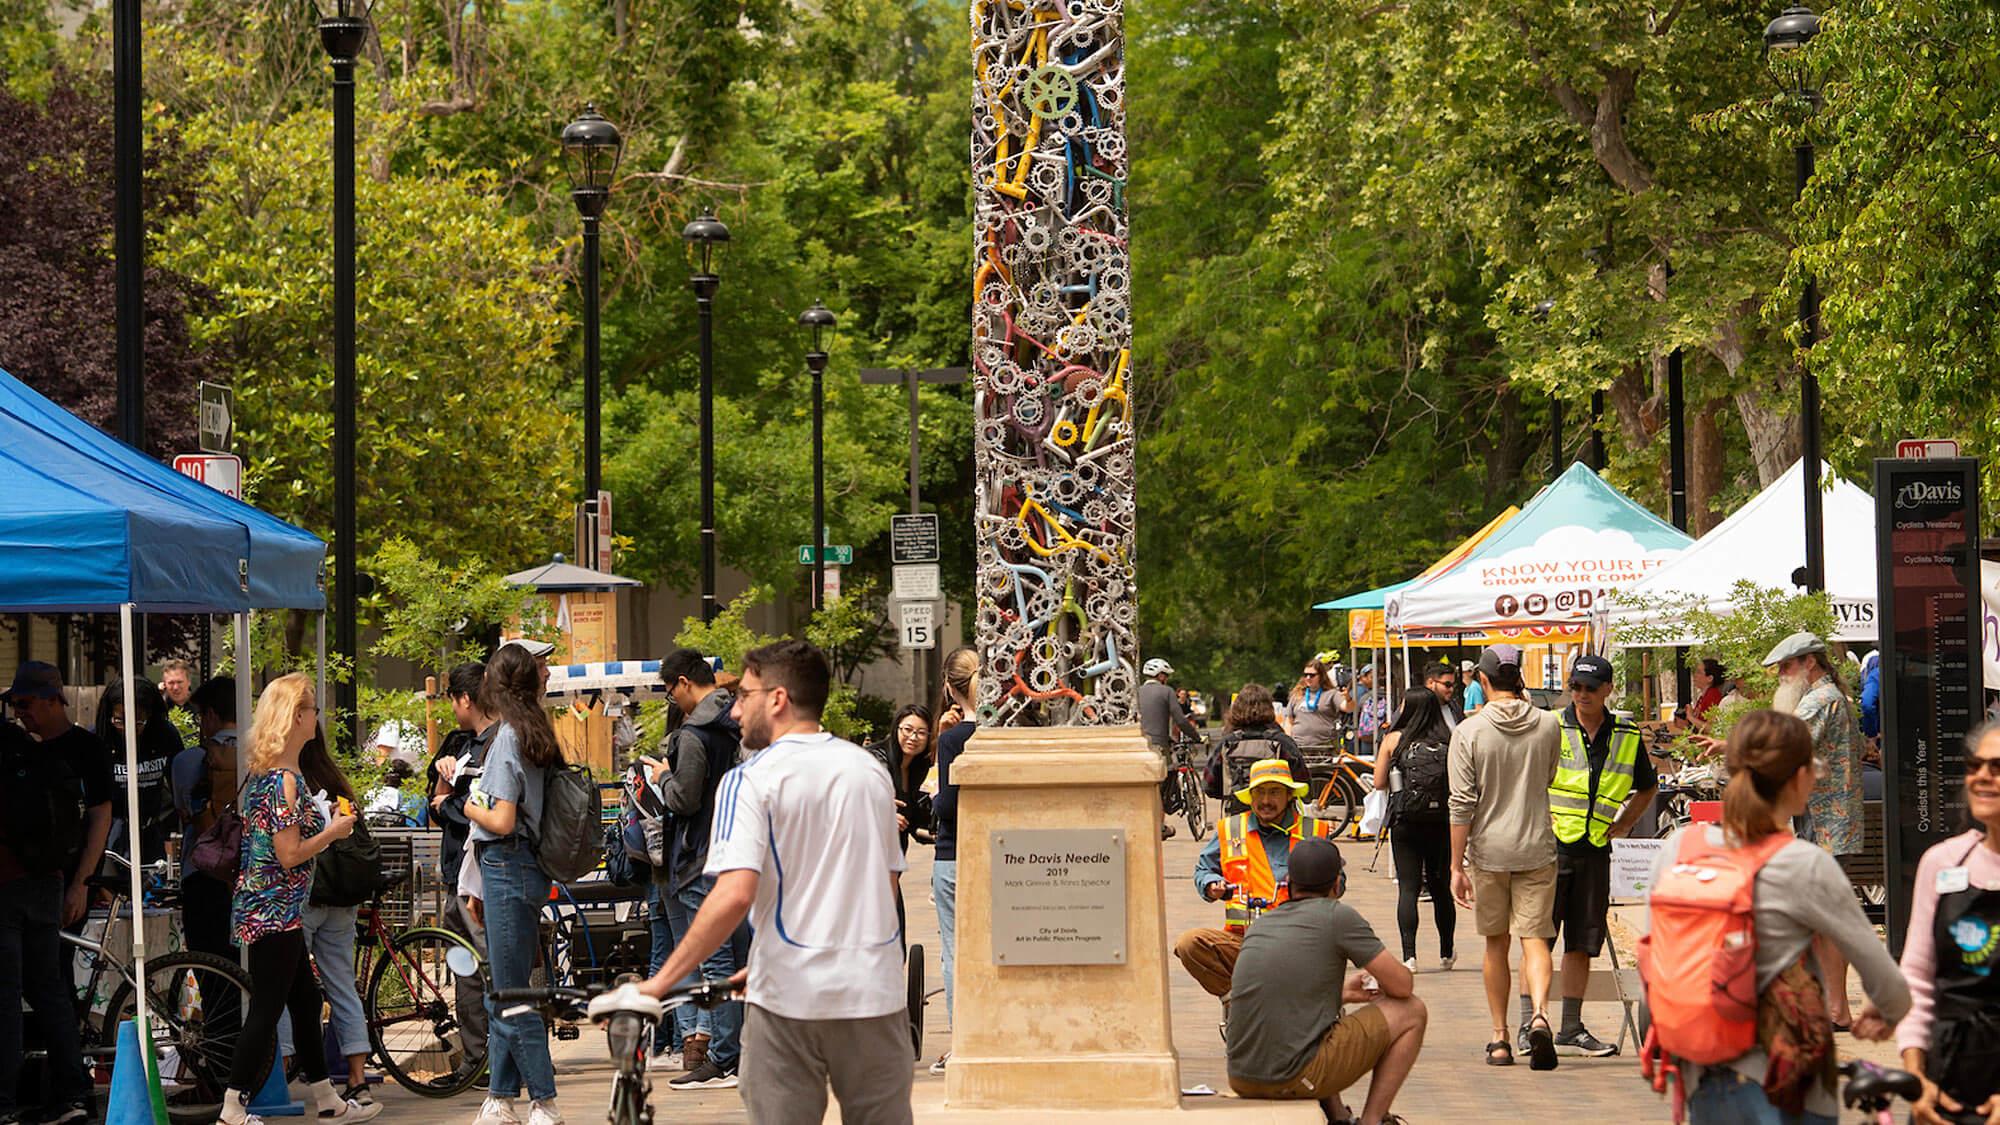 加利福尼亚州戴维斯市中心的一幕，挤满了学生和当地人，还有一座由自行车零件制成的独特方尖碑形雕塑